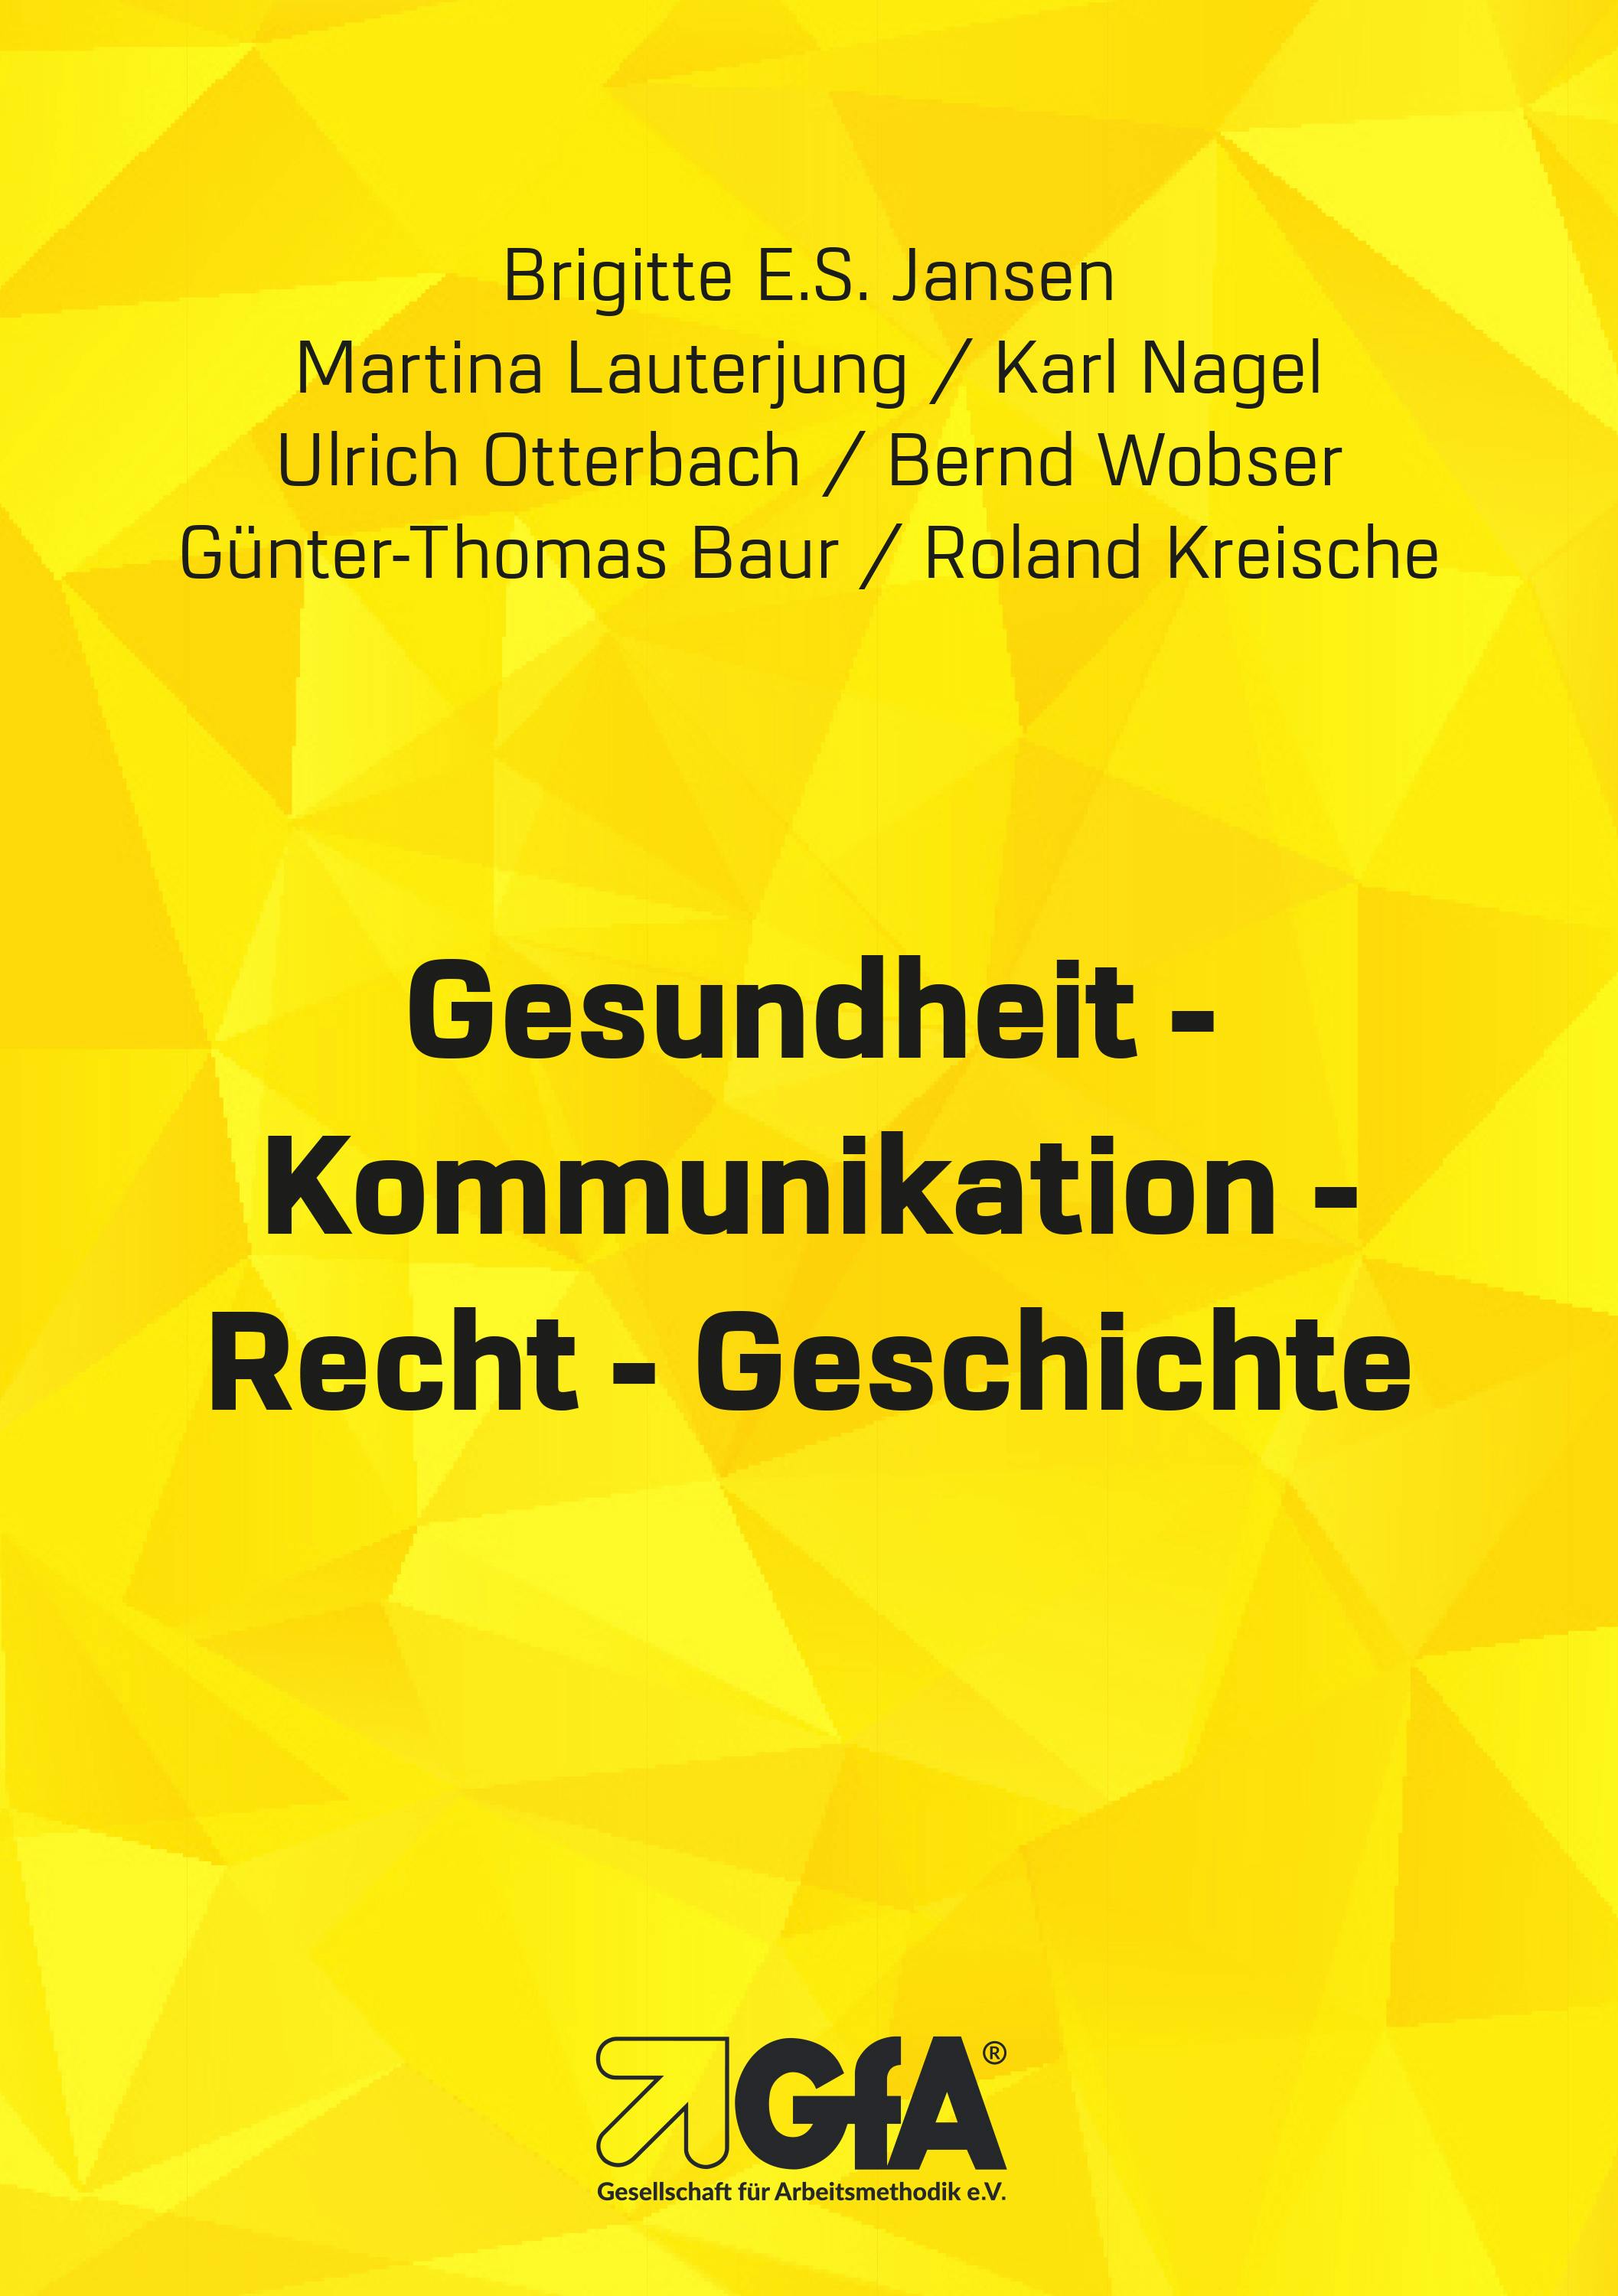 Gesundheit - Kommunikation - Recht - Geschichte - Ulrich Otterbach, Bernd Wobser, Roland Kreische, Karl Nagel, Brigitte E.S. Jansen, Günter Th. Baur, Martina Lauterjung